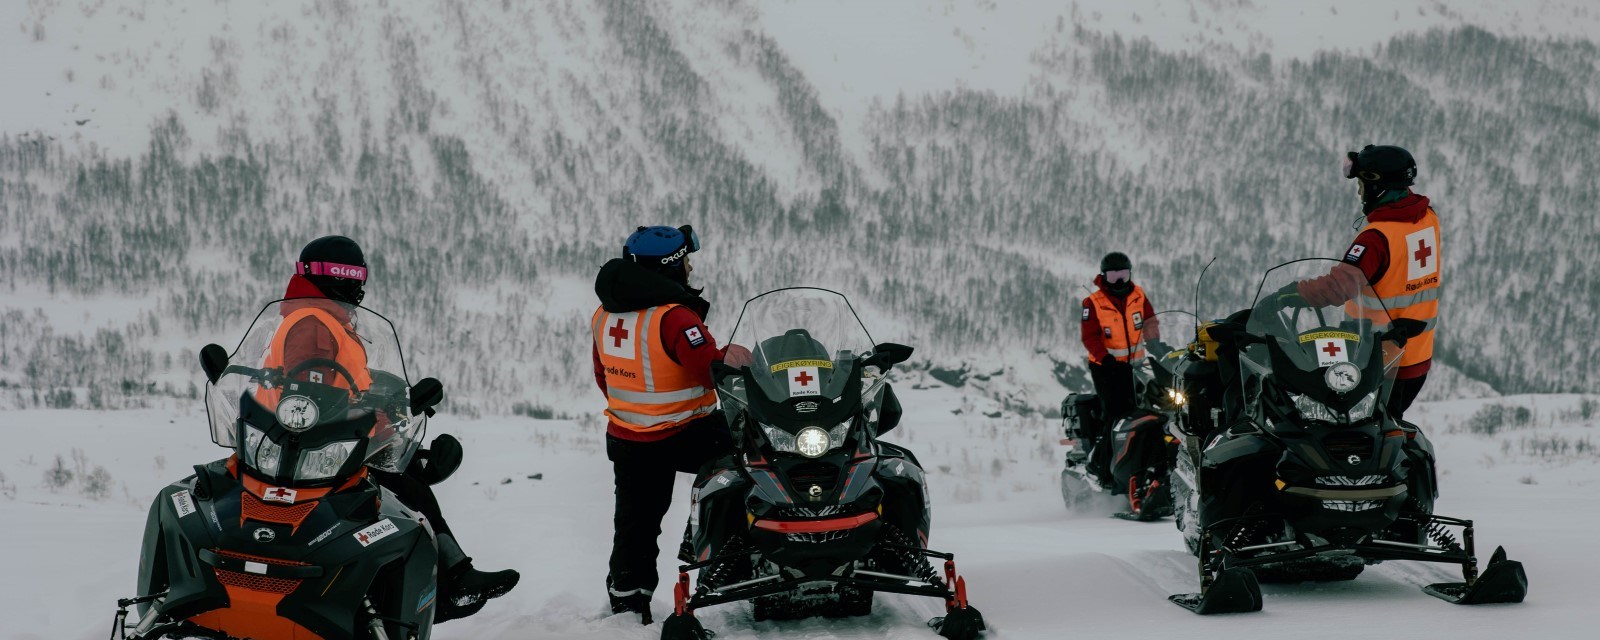 Fire personer fra Hjelpekorps er ute på vidda med snøscootere